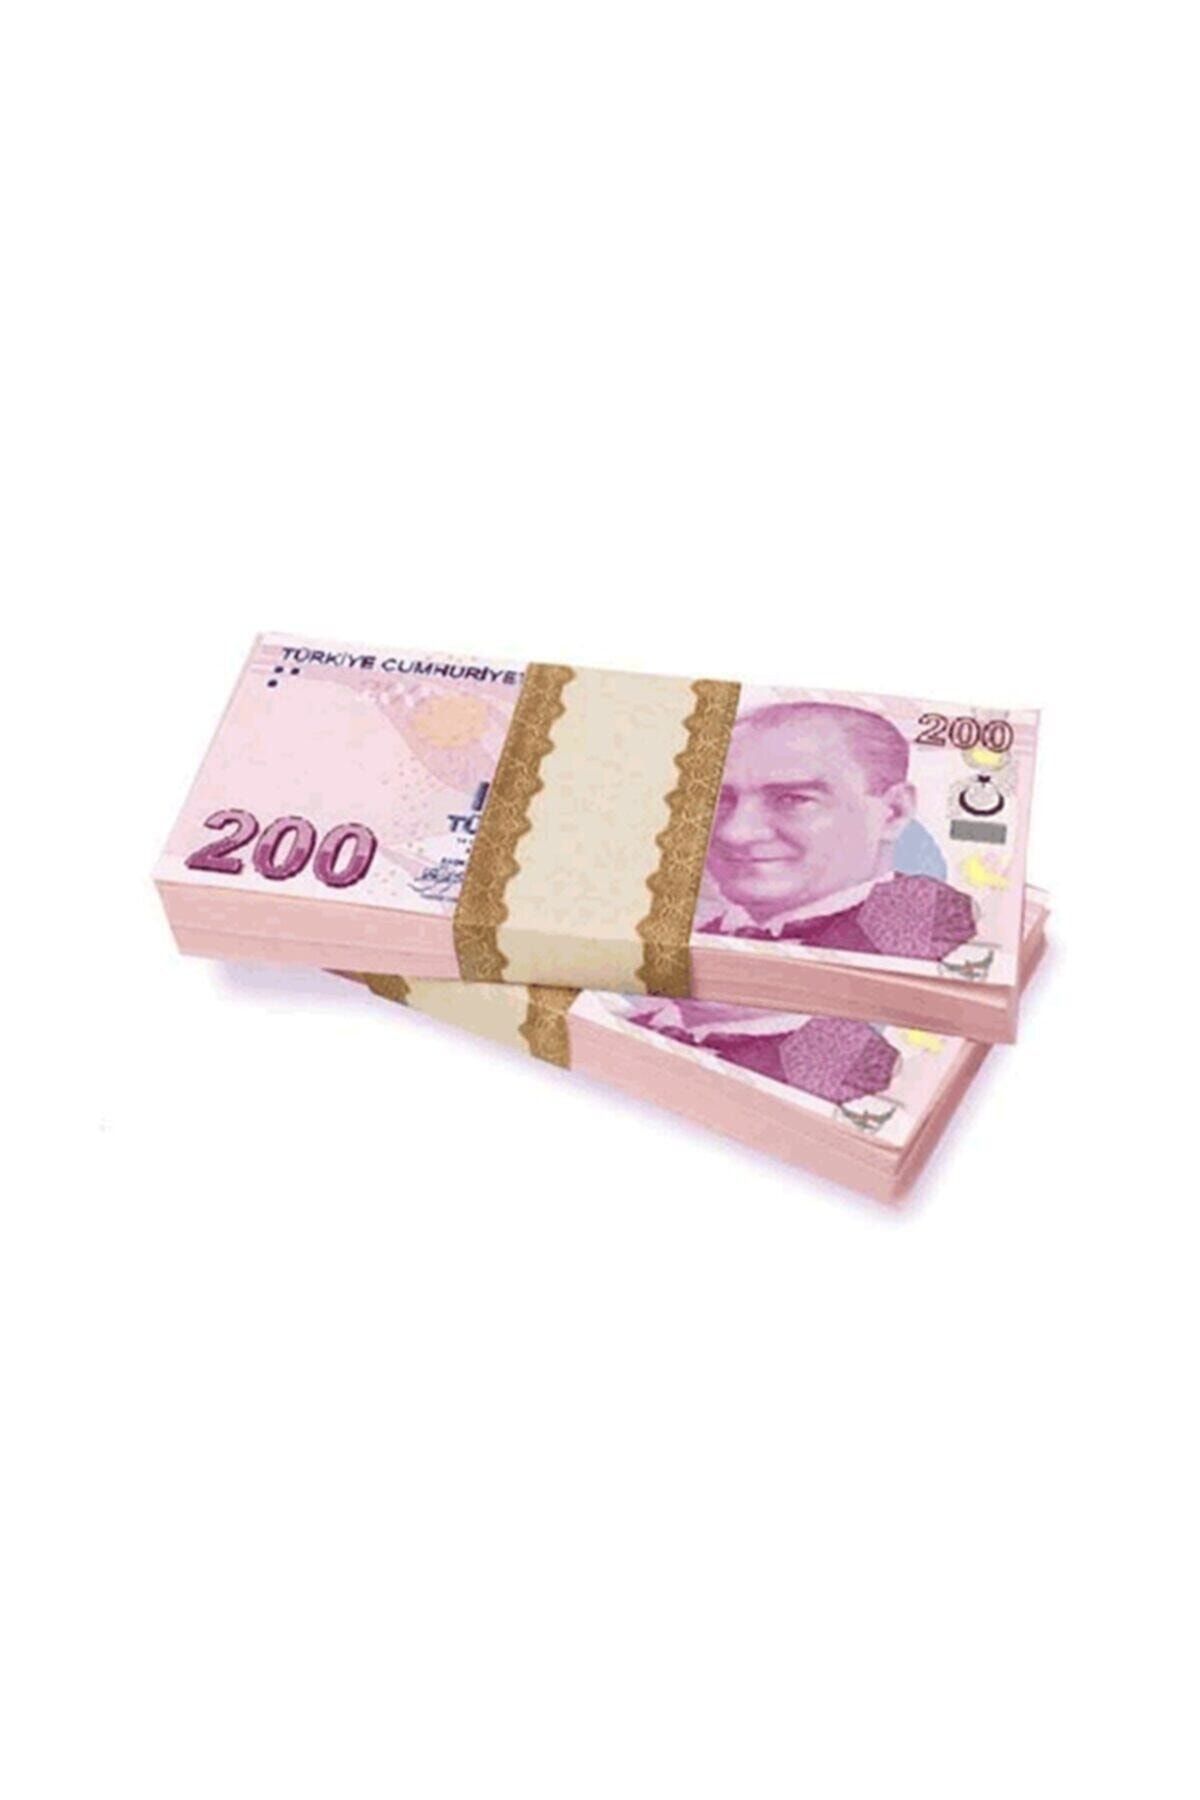 OLCAY CENTER Sahte Geçersiz Düğün Parası - 100 Adet 200 Tl